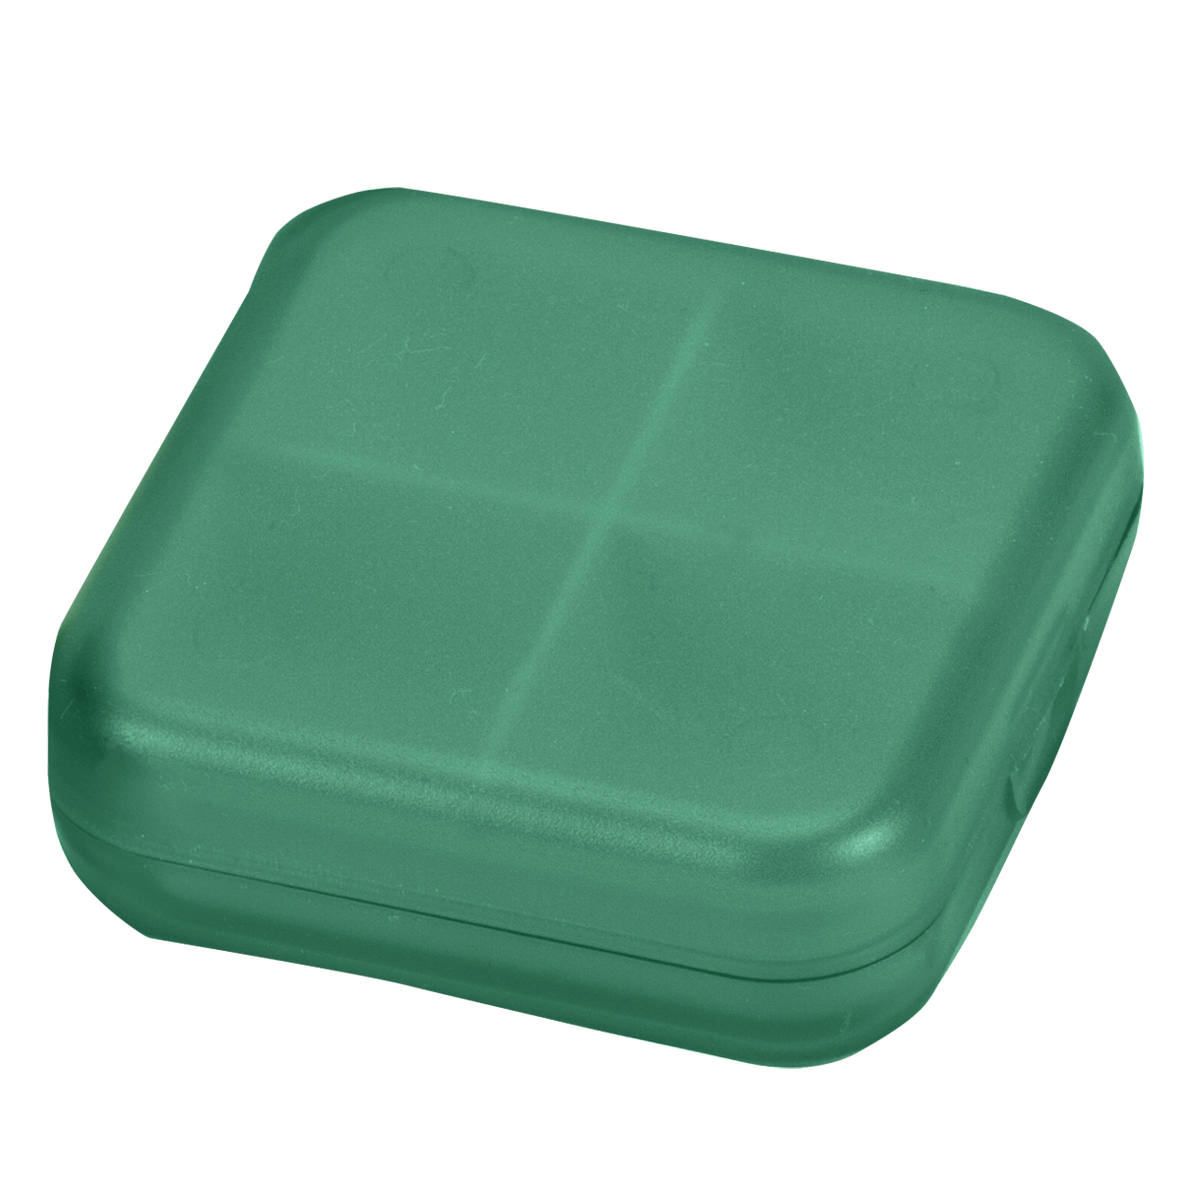 קופסת פלסטיק לתרופות 4 תאים - מדיקט